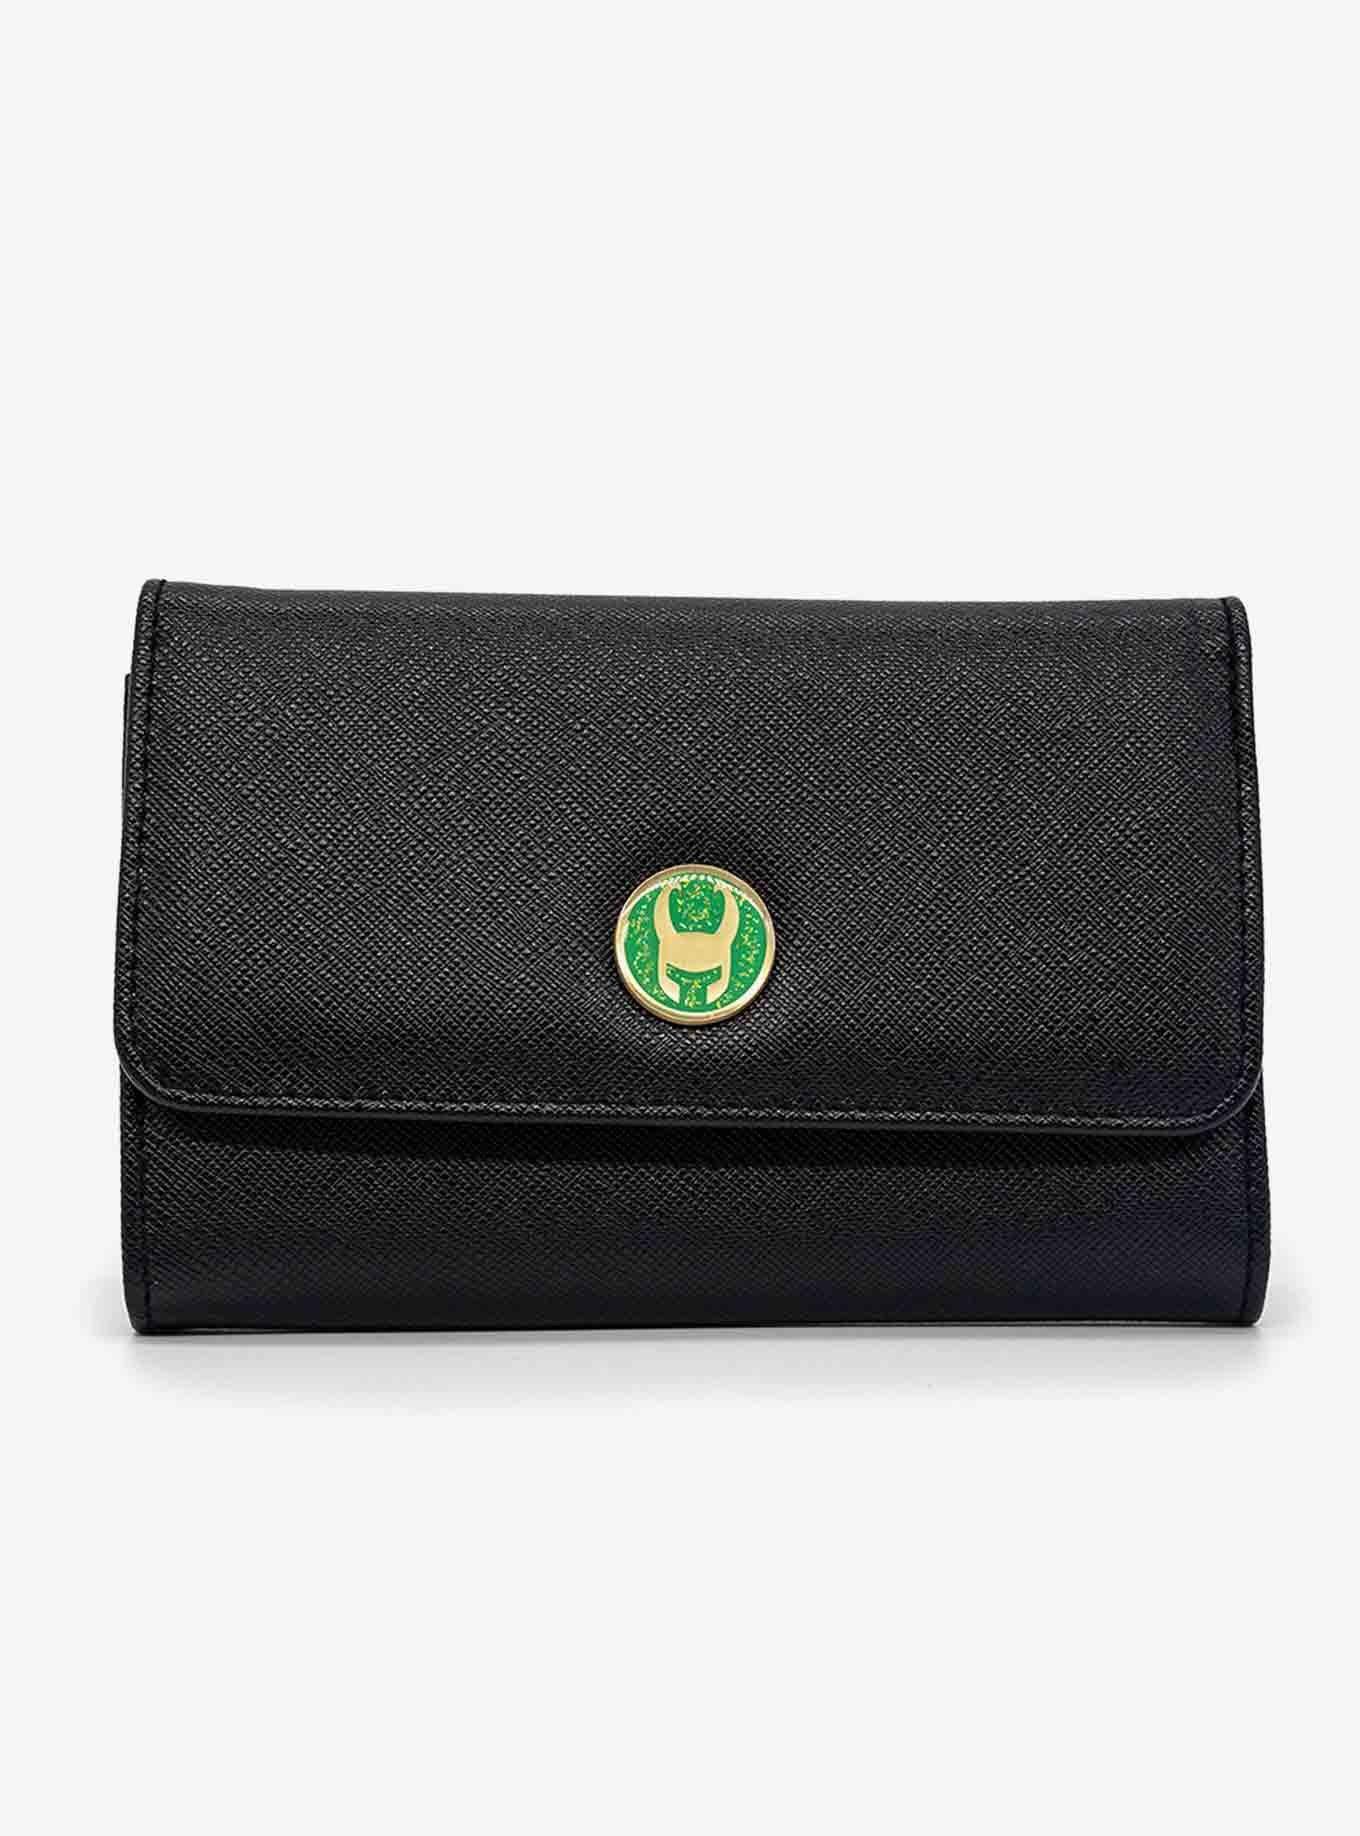 Marvel Loki Helmet Emblem Vegan Leather Foldover Flap Wallet, , hi-res